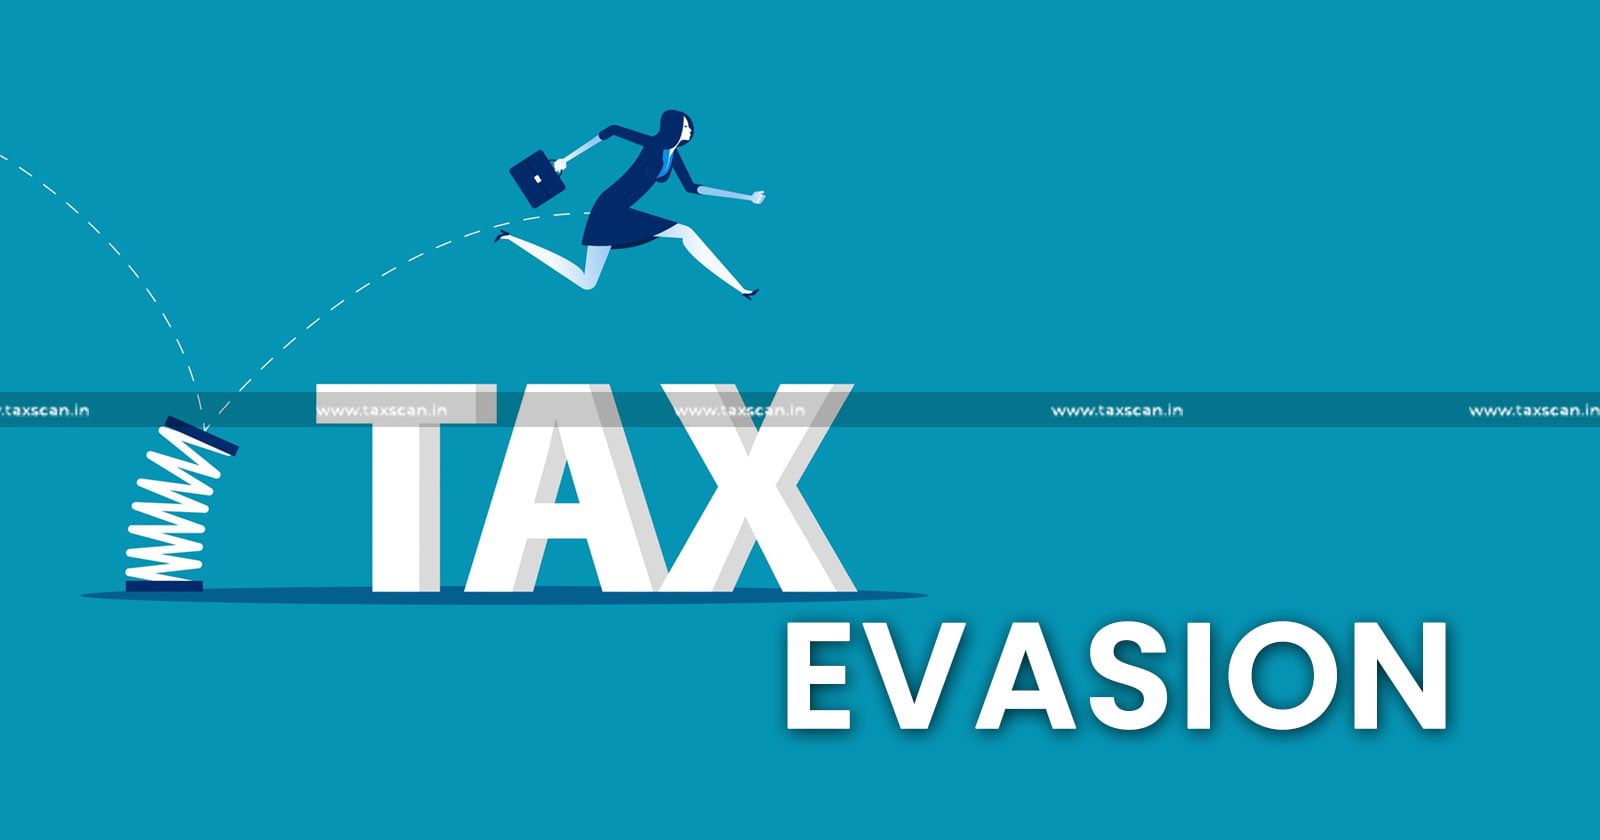 Amalgamation Legitimate - Tools - Tax Evasion - Cooperate - Customs Department - Madras HC - TAXSCAN